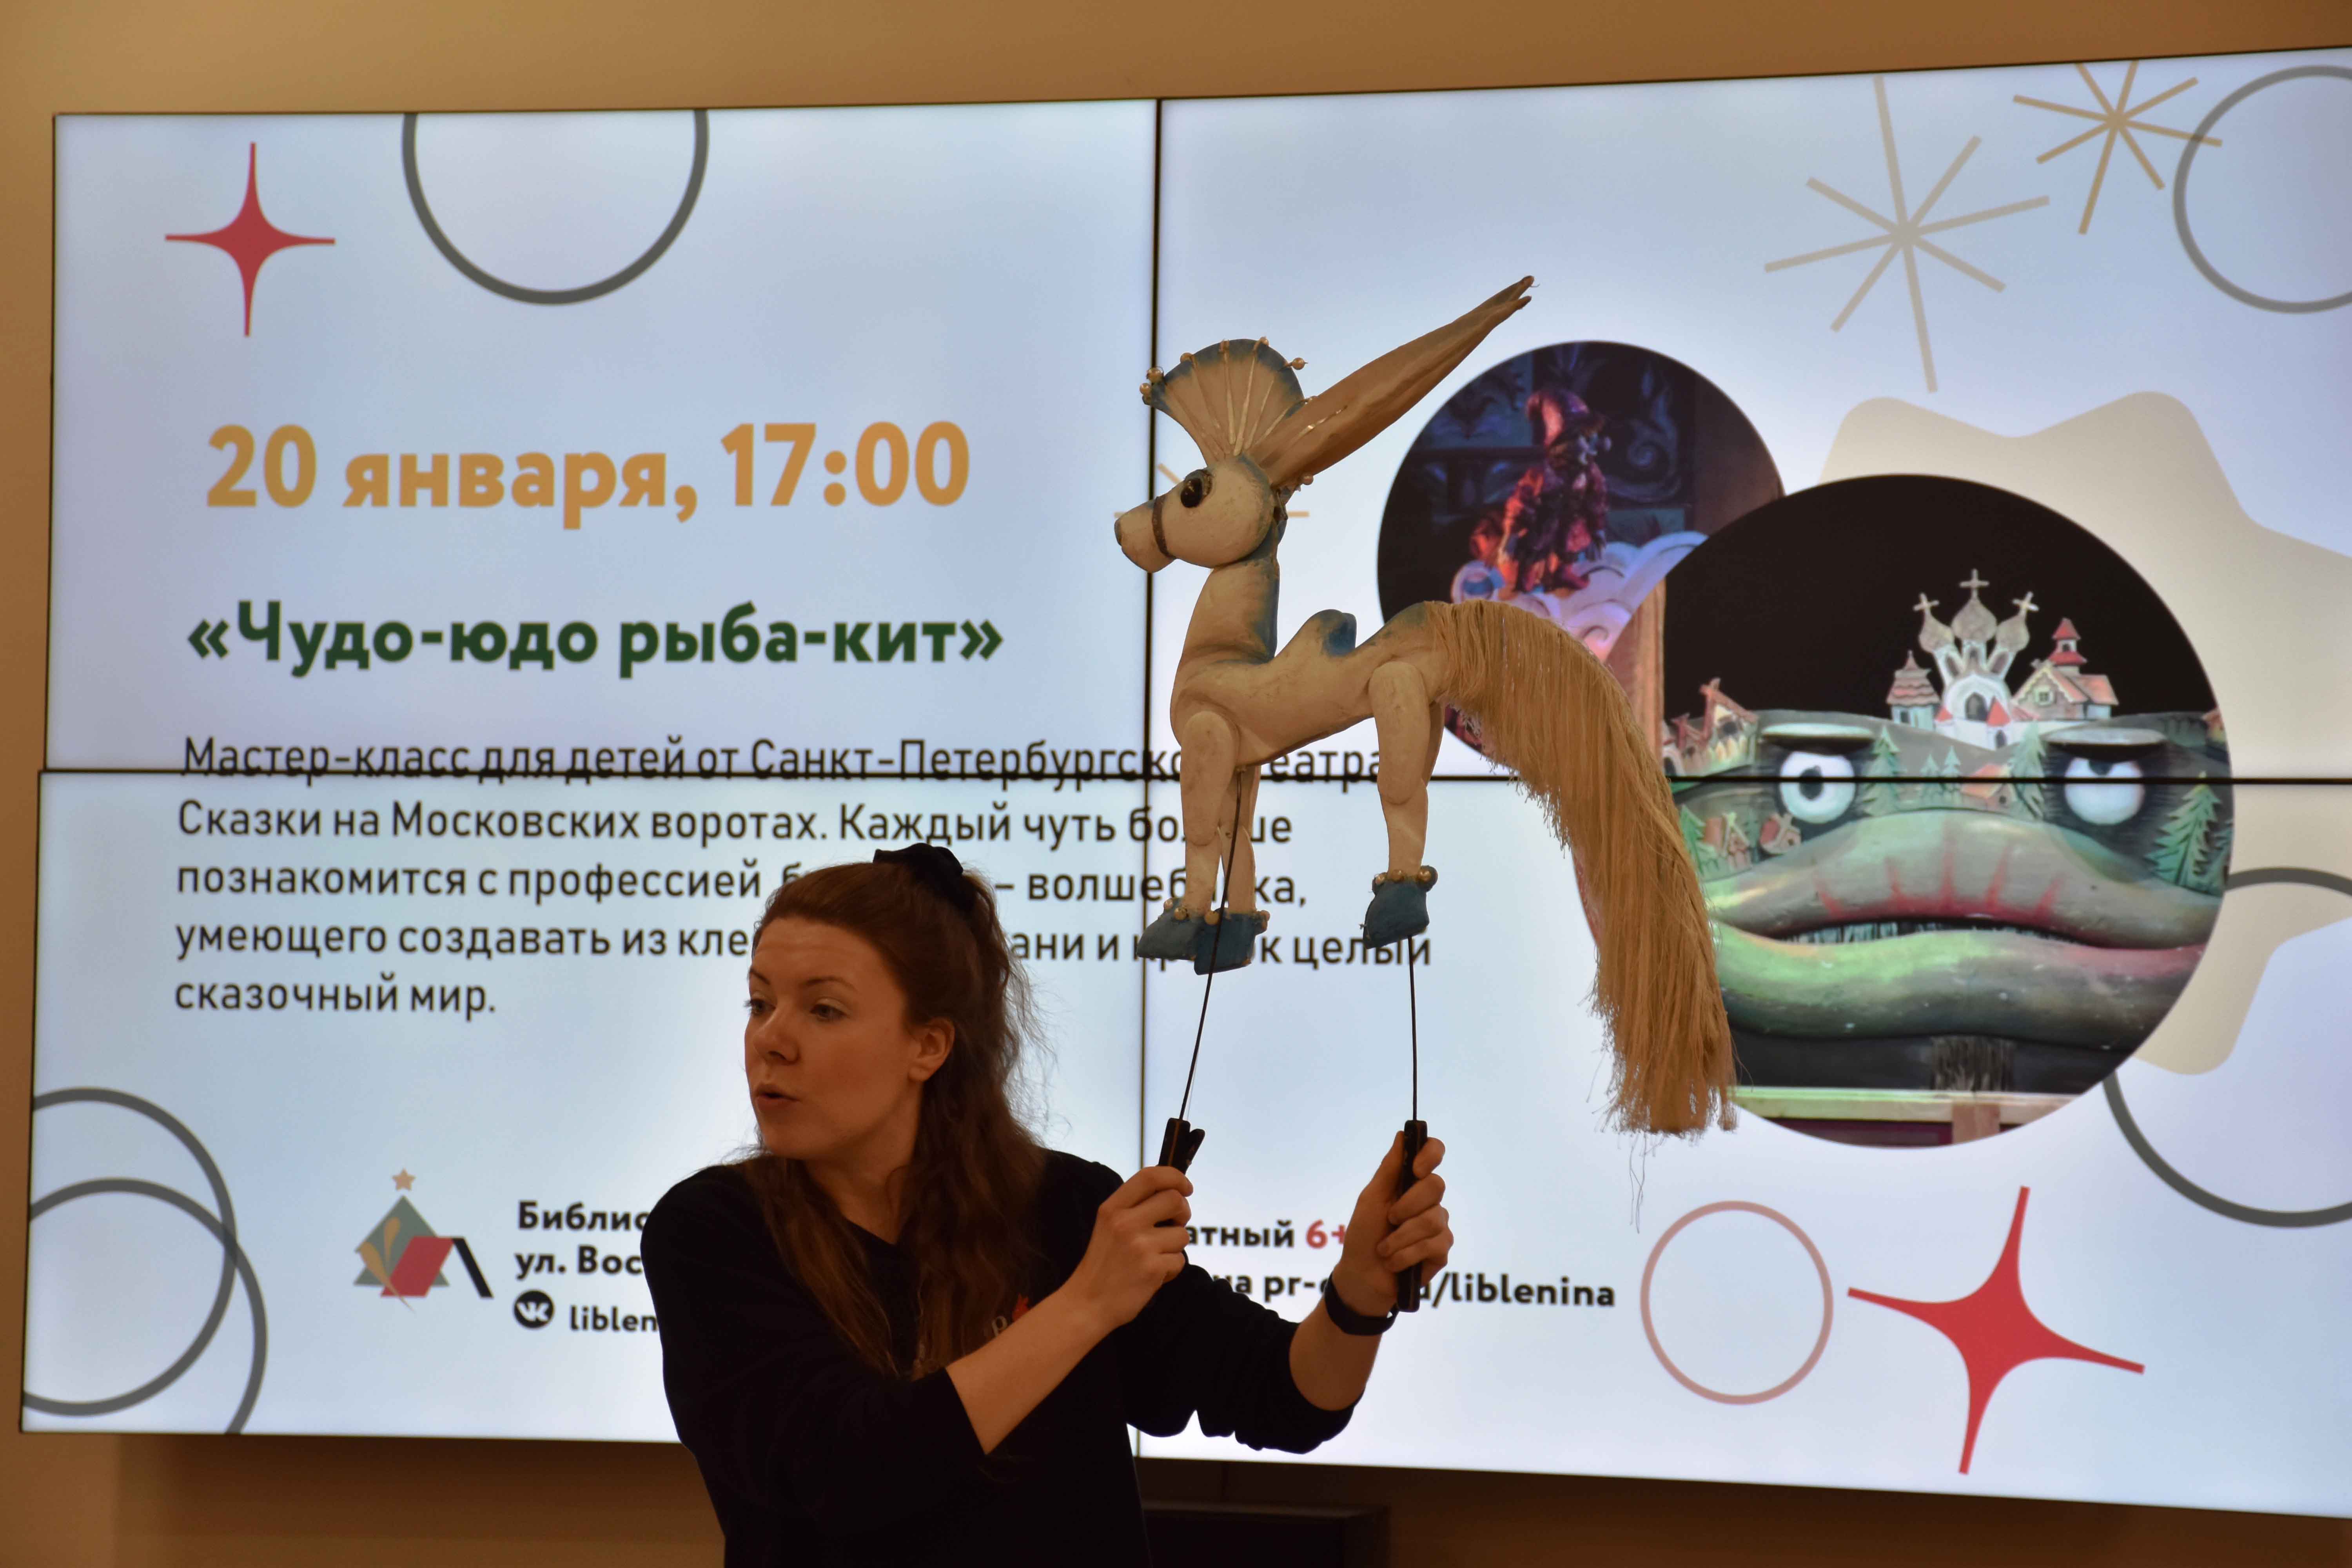 20 января в Библиотеке имени В.И. Ленина состоялось открытие нового сезона совместных встреч Библиотек Петроградского района и Кукольного театра сказки